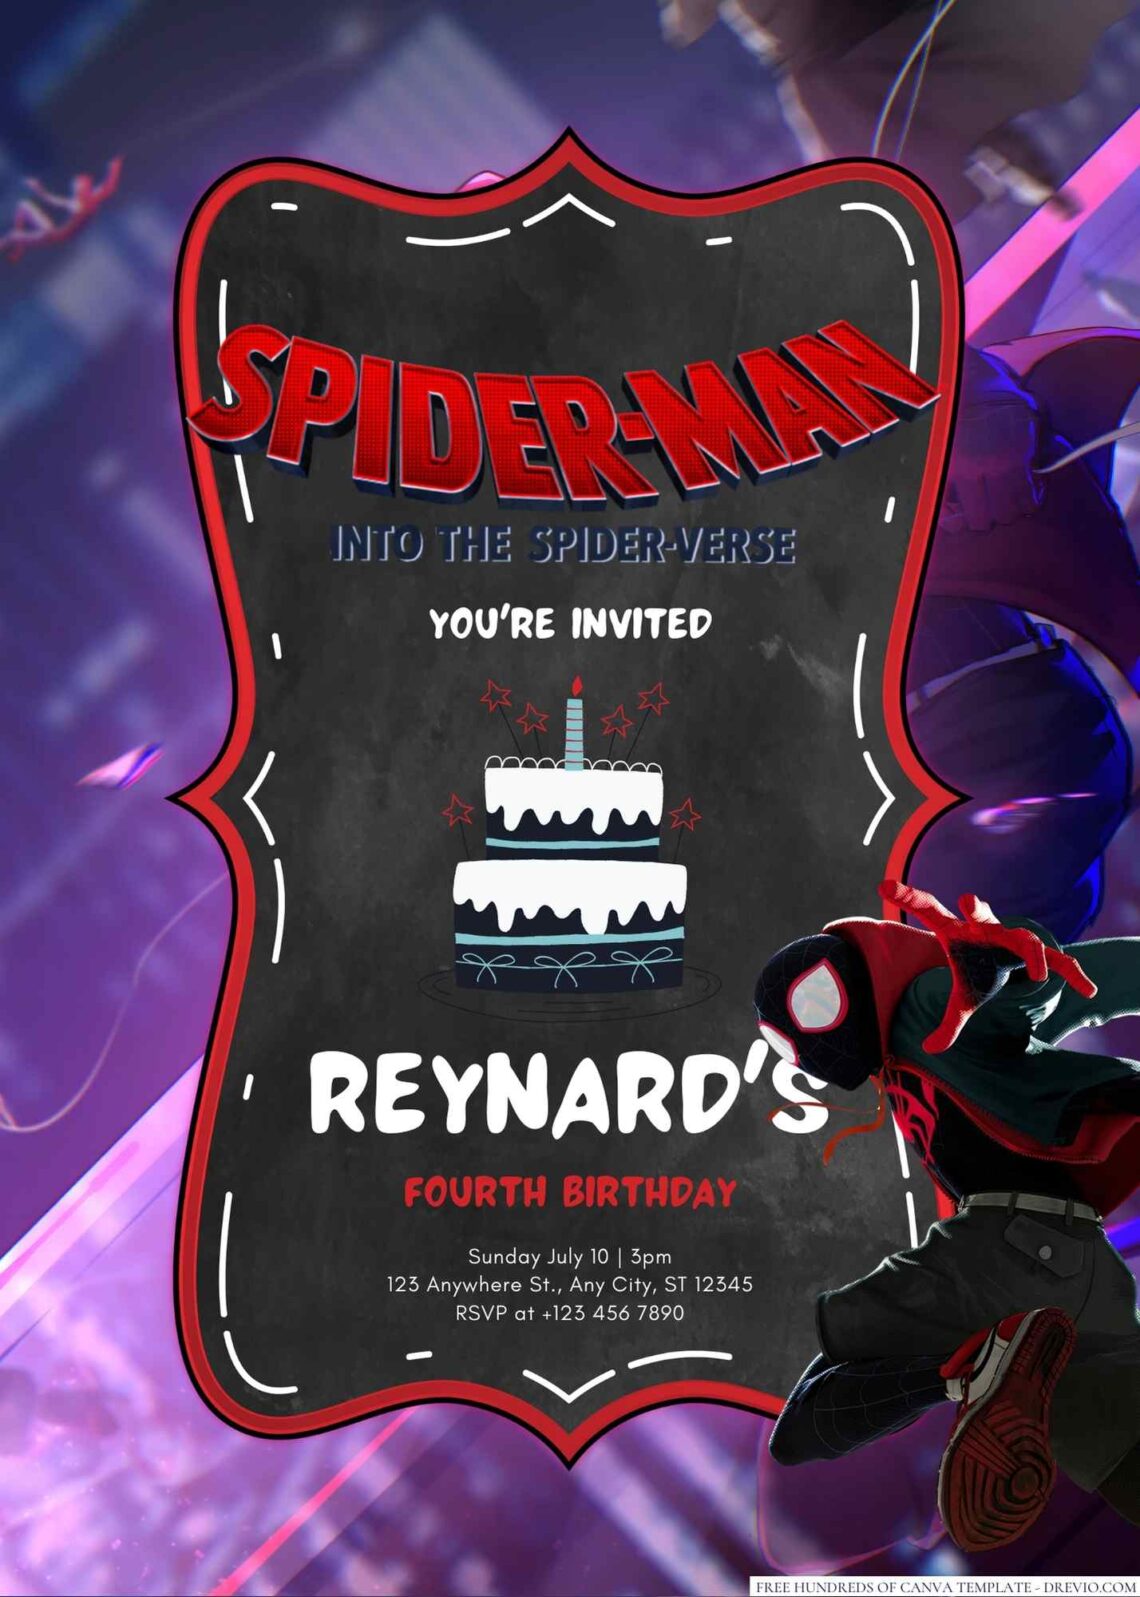 Spider-Man Into the Spider-Verse Birthday Invitation